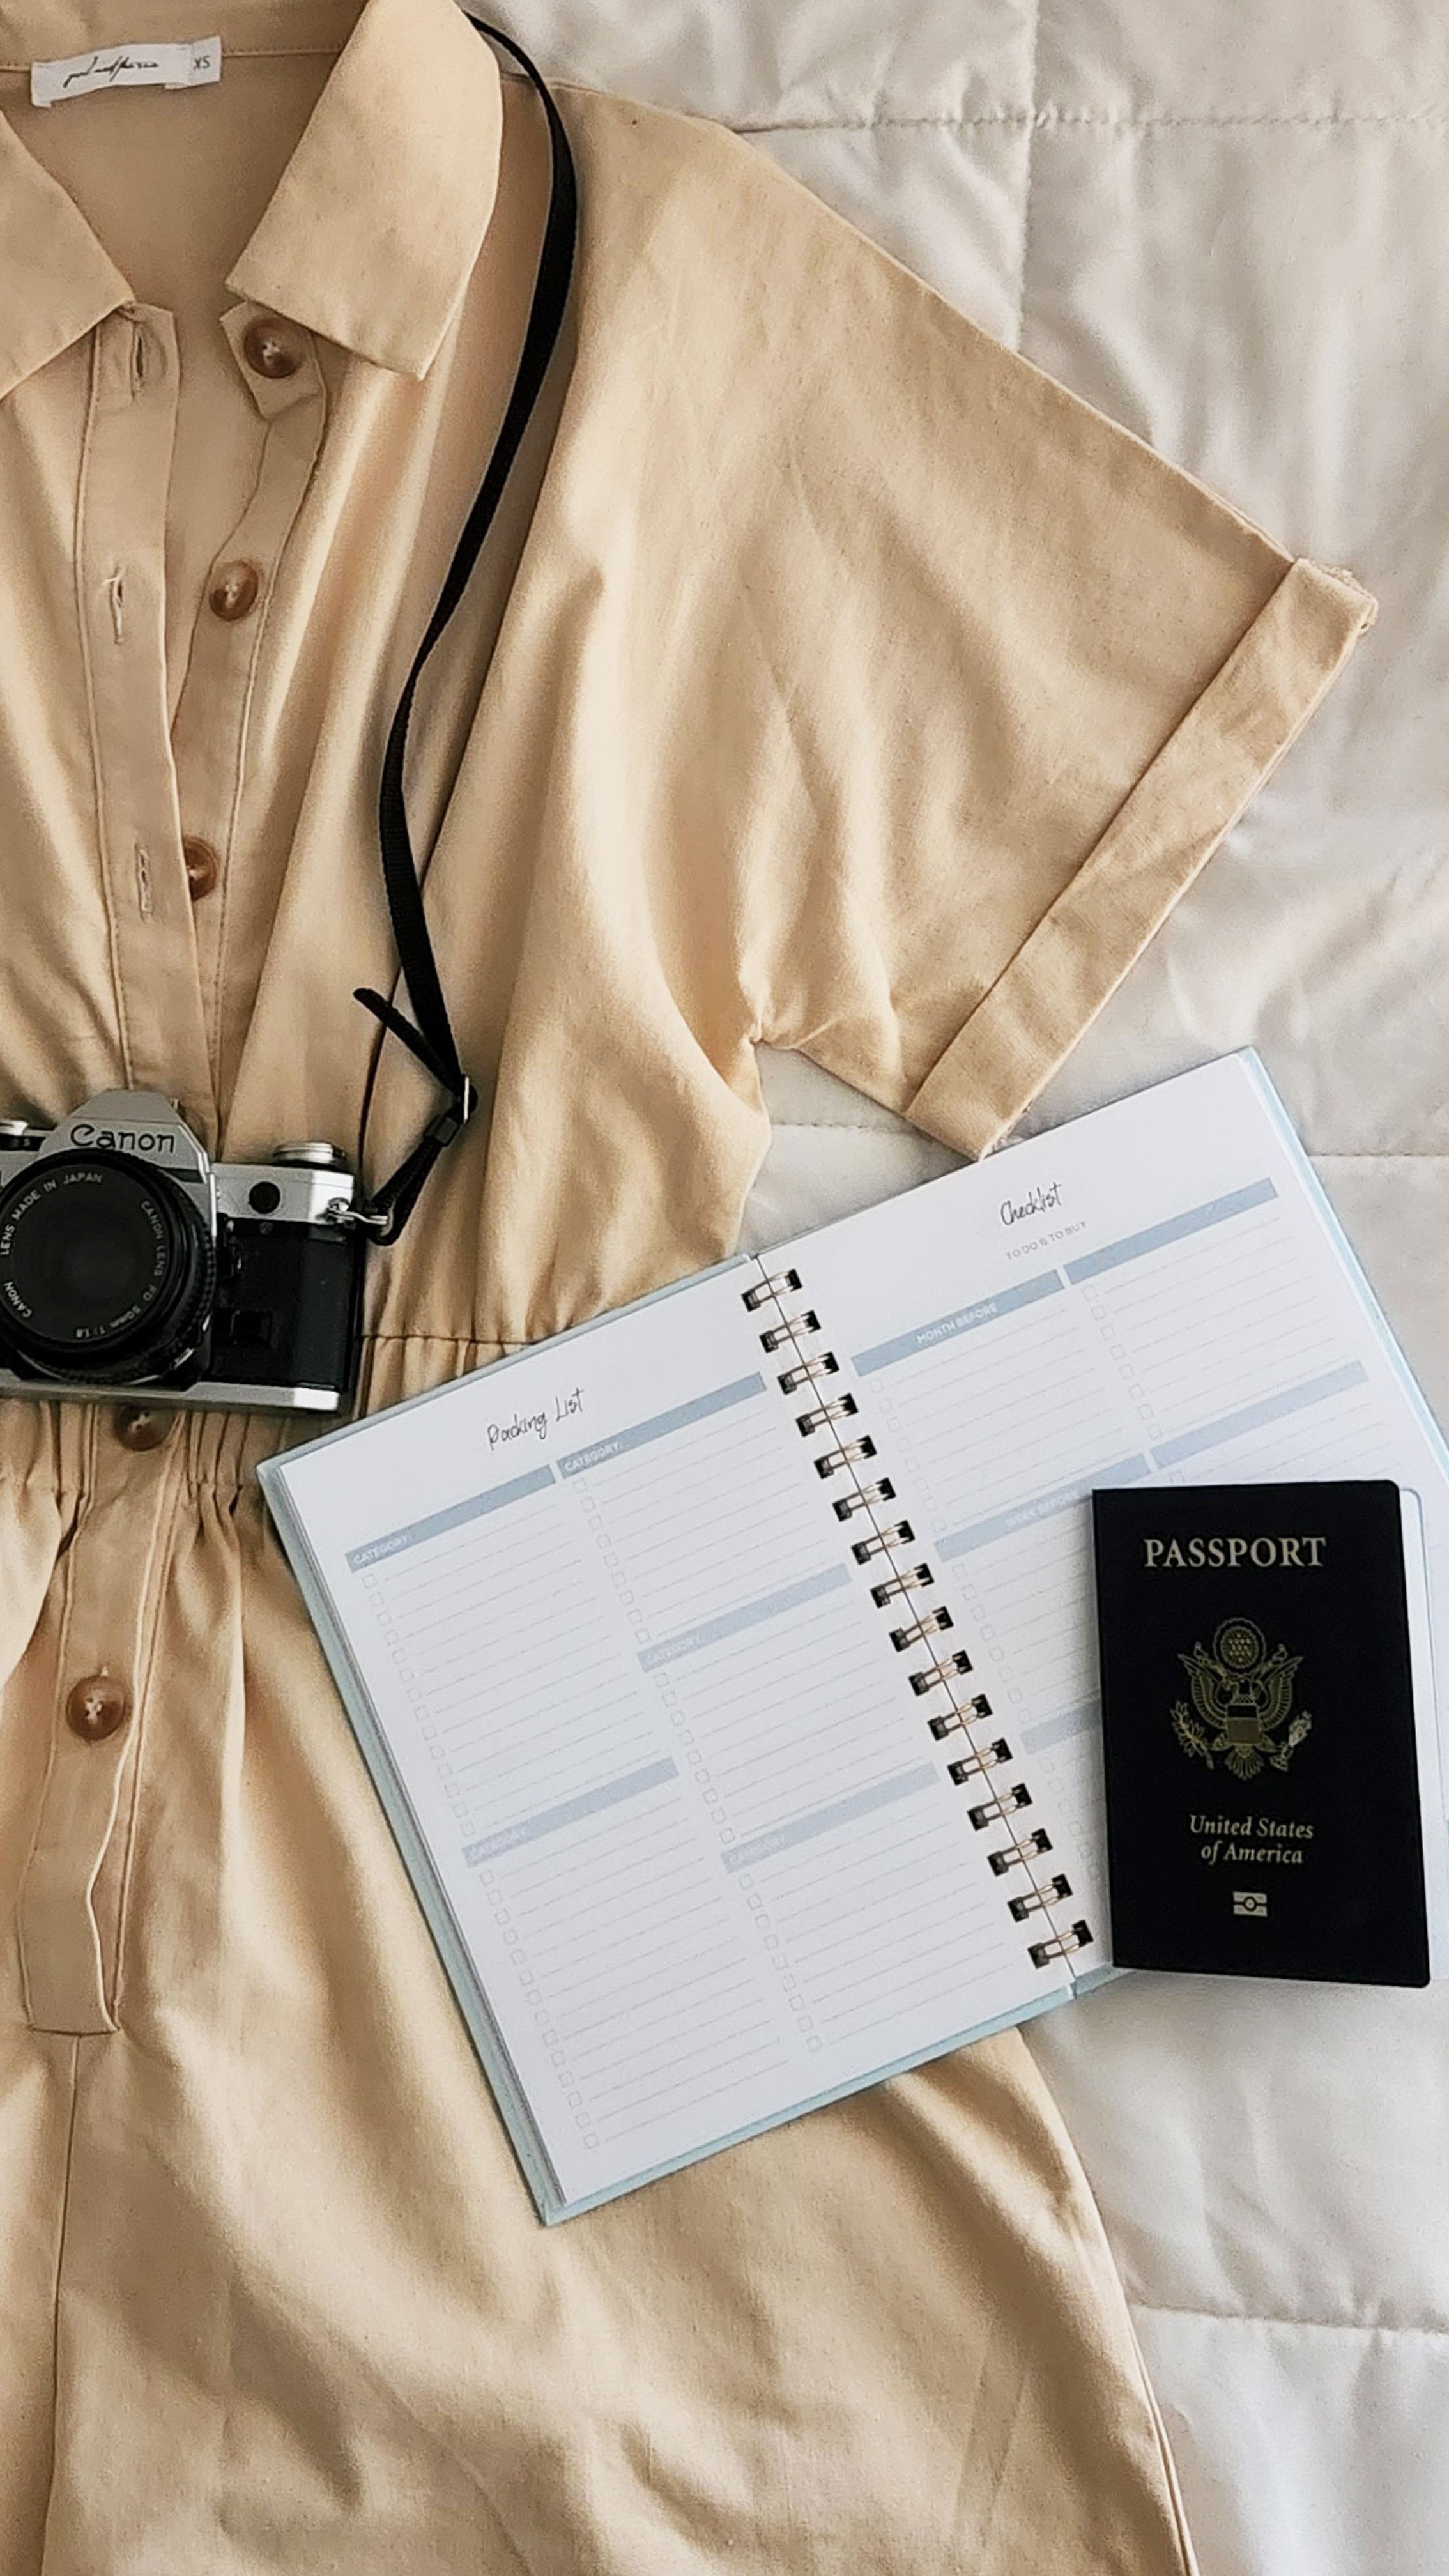 Wander Always: Travel Journal